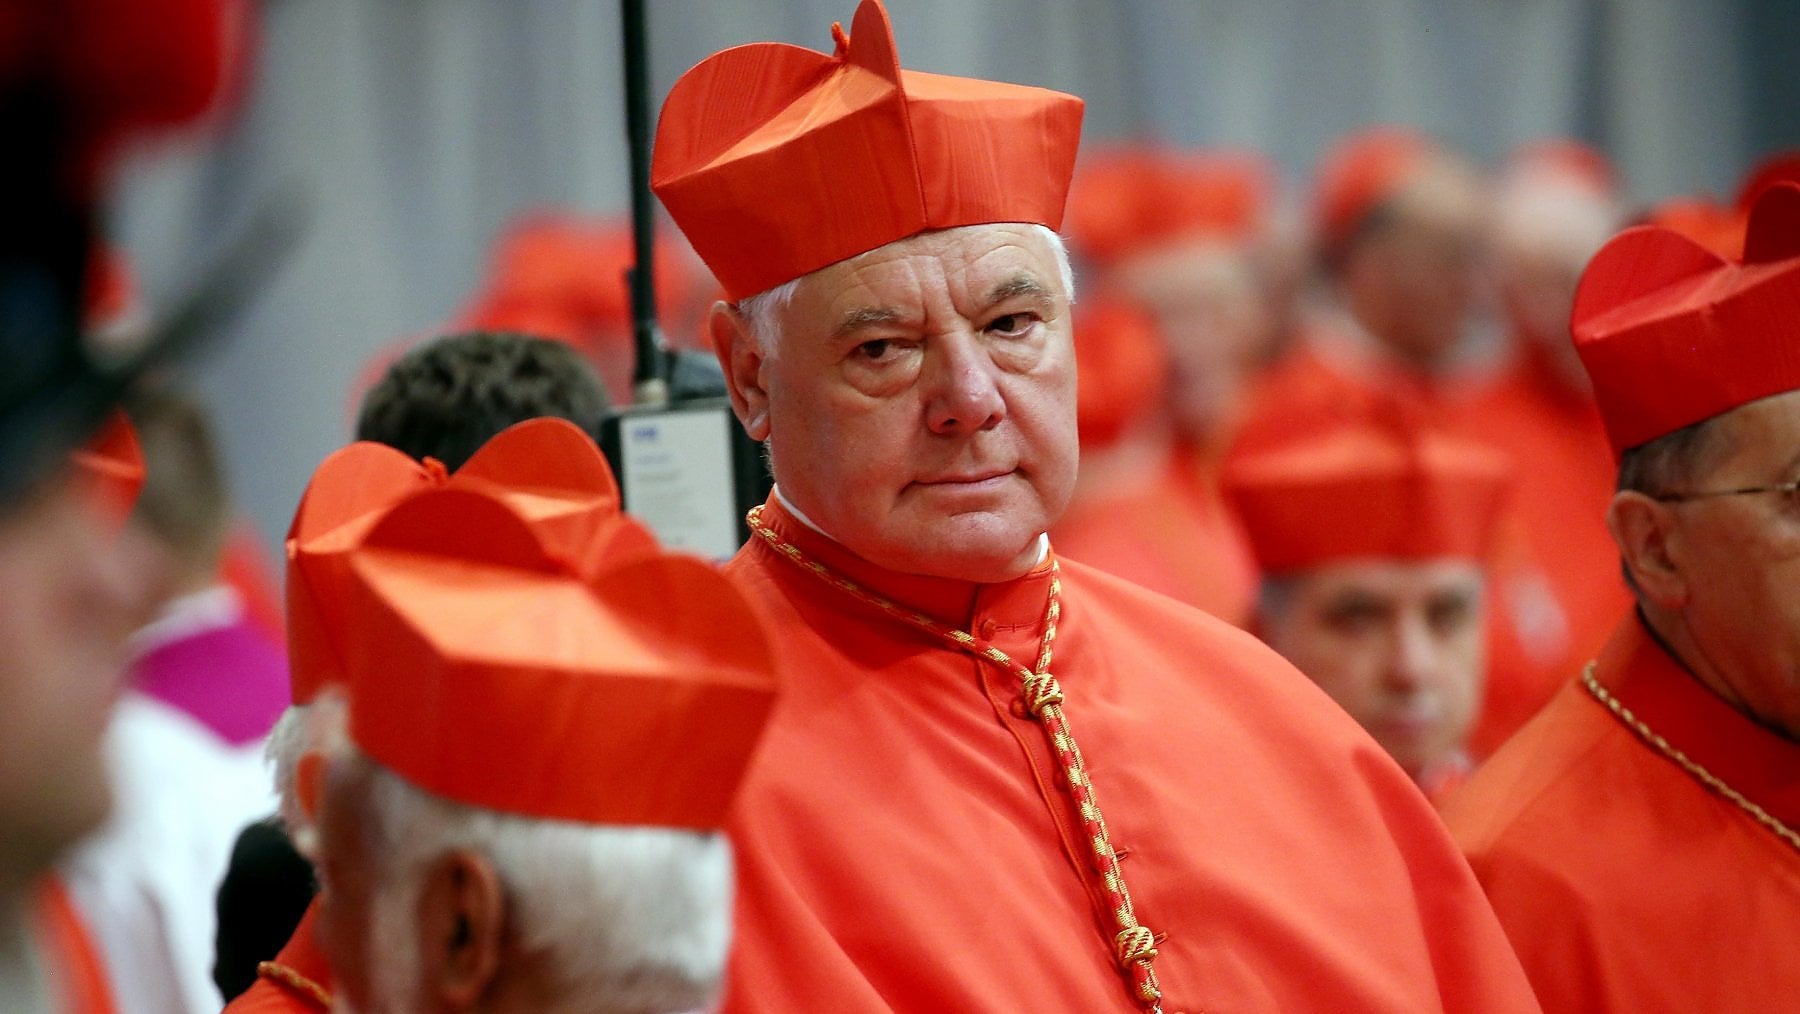 Papa eretico? A prendere alla lettera il cardinale Müller nessuno potrebbe essere benedetto, altro che coppie gay